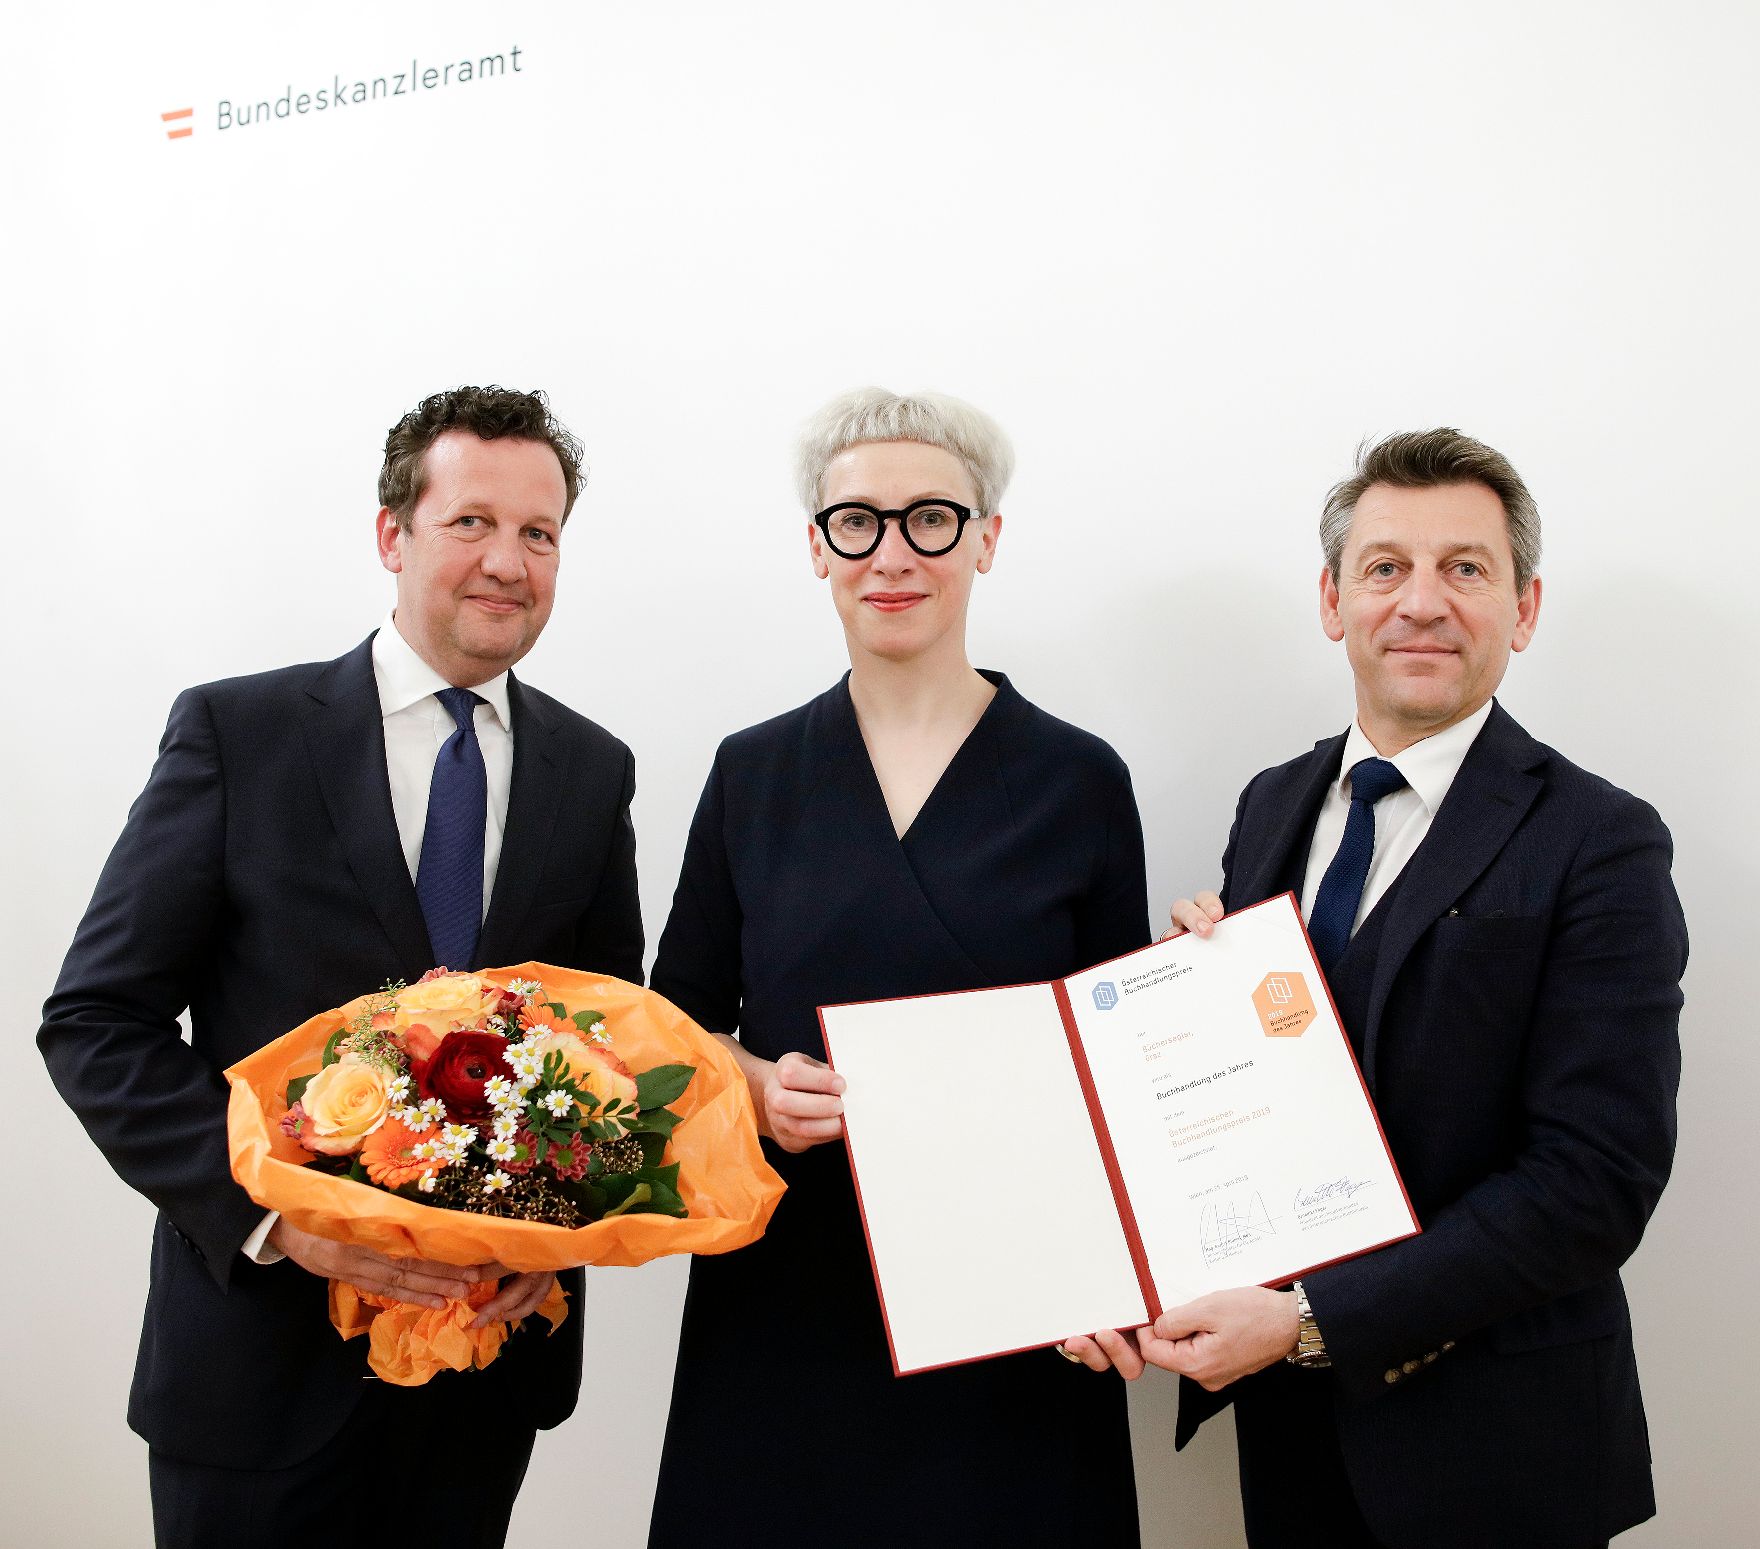 Am 25. April 2019 fand die Überreichung der Österreichischen Buchhandlungspreise durch Sektionschef Jürgen Meindl (r.) und den Präsident des Hauptverbandes des Österreichischen Buchhandels, Benedikt Föger (l.) statt.